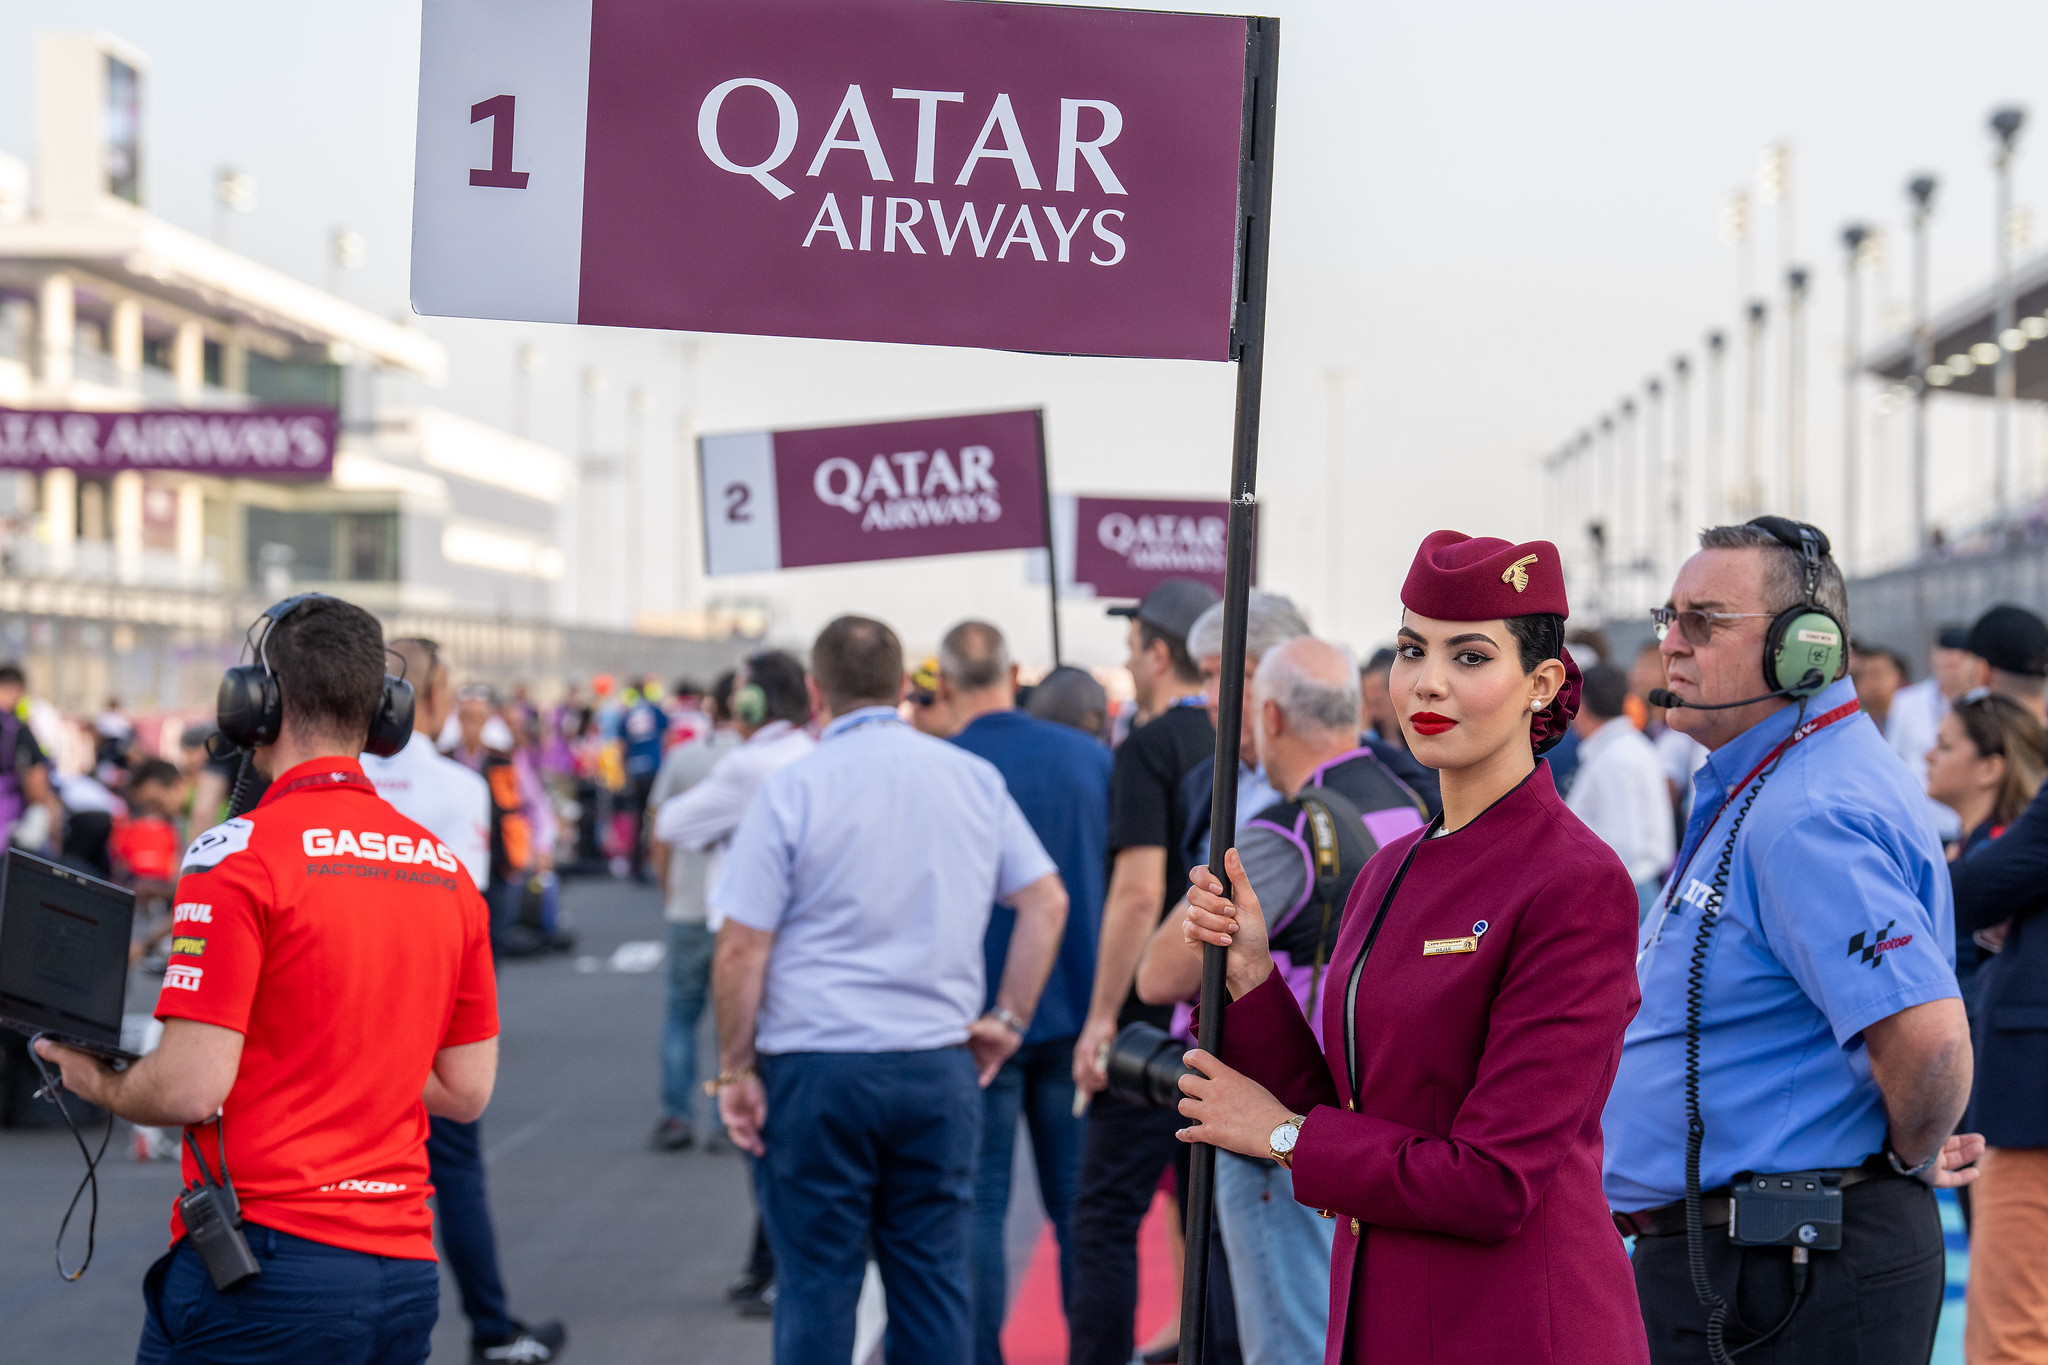 Stewardessen Qatar Airways, event sponsor